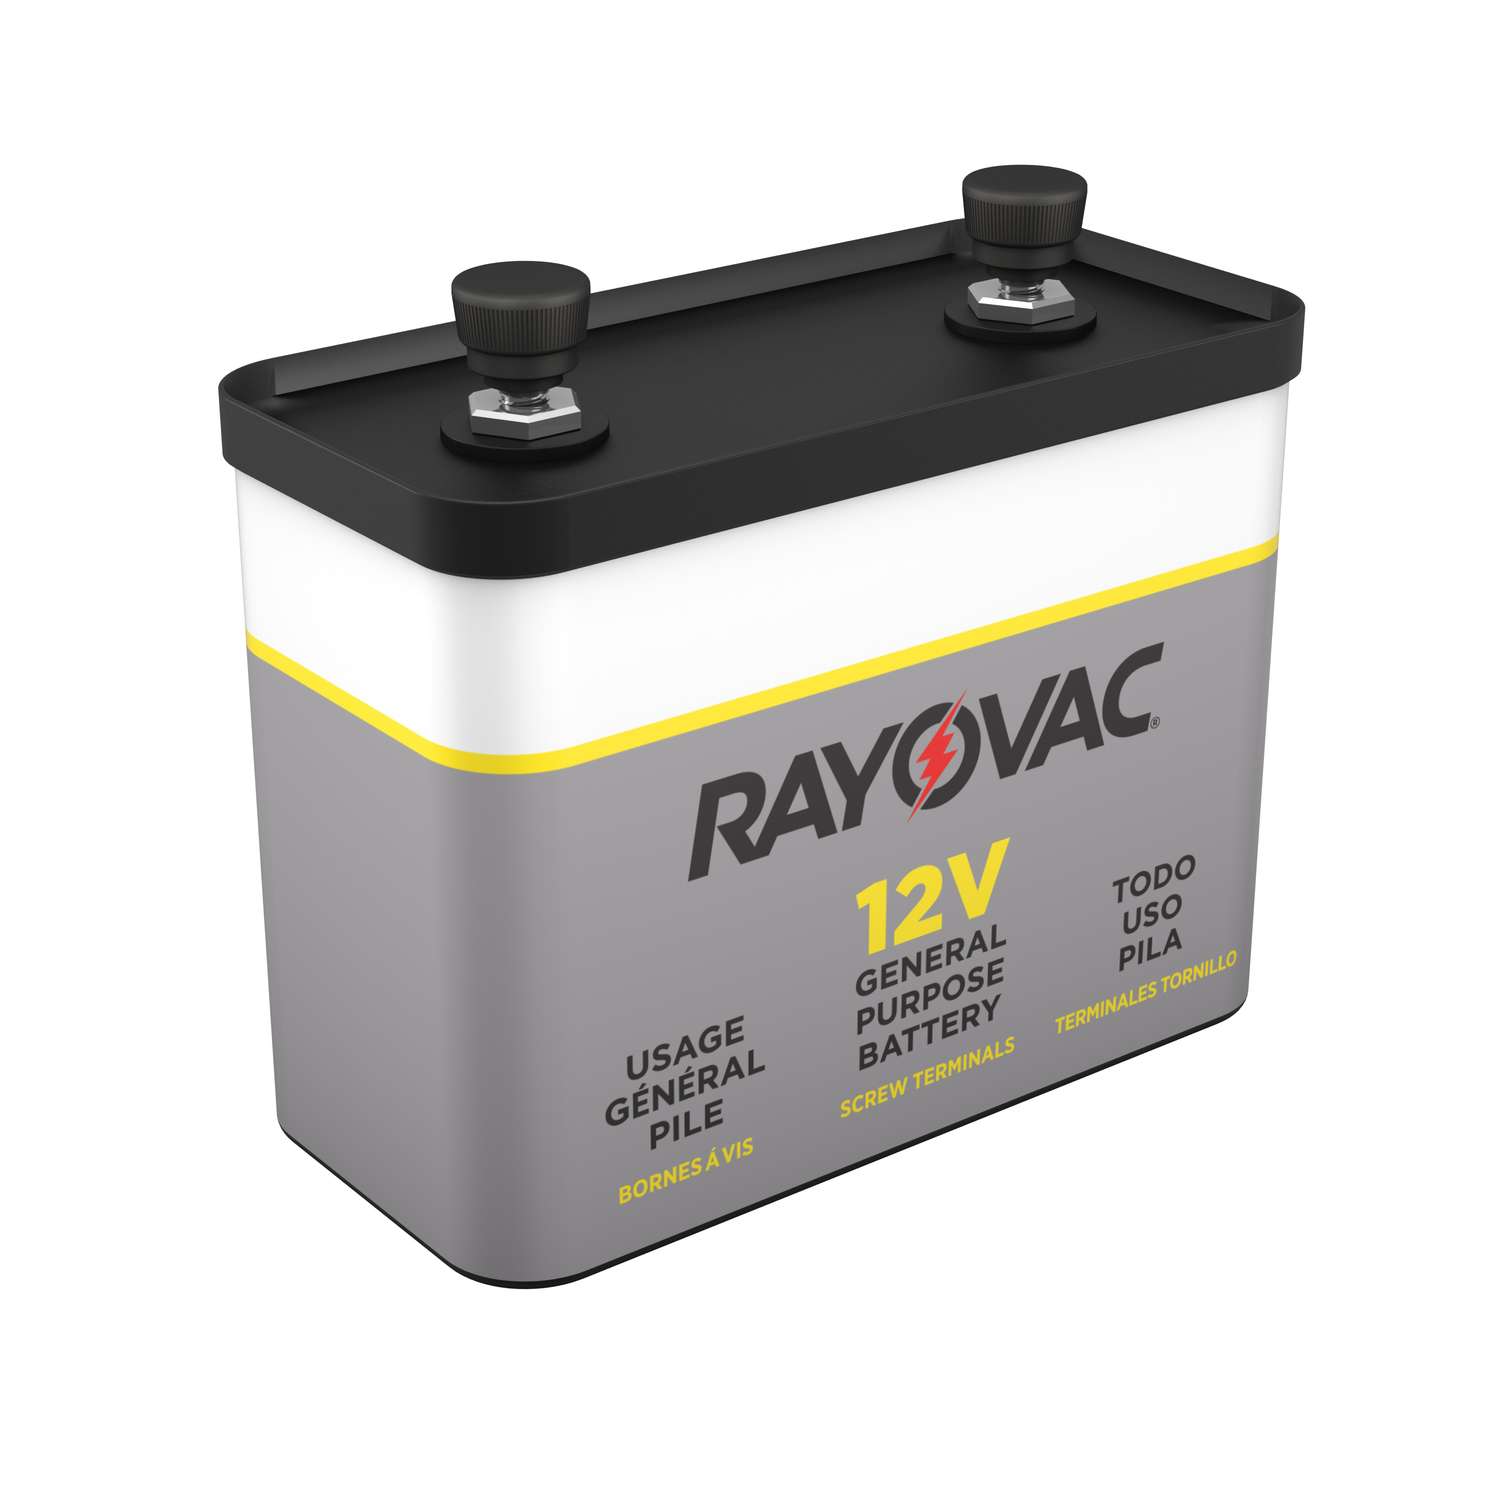 Rayovac Lantern Battery, 12V